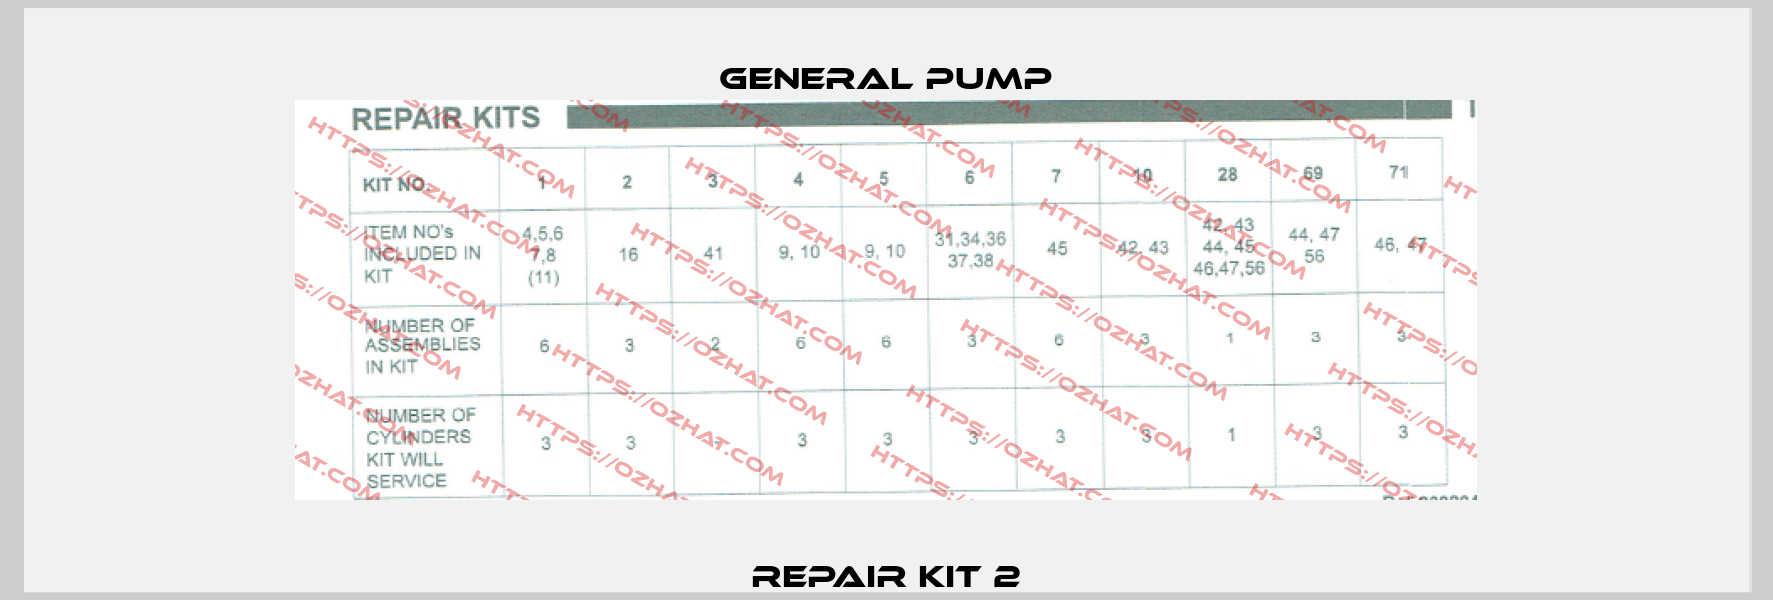 Repair Kit 2 General Pump